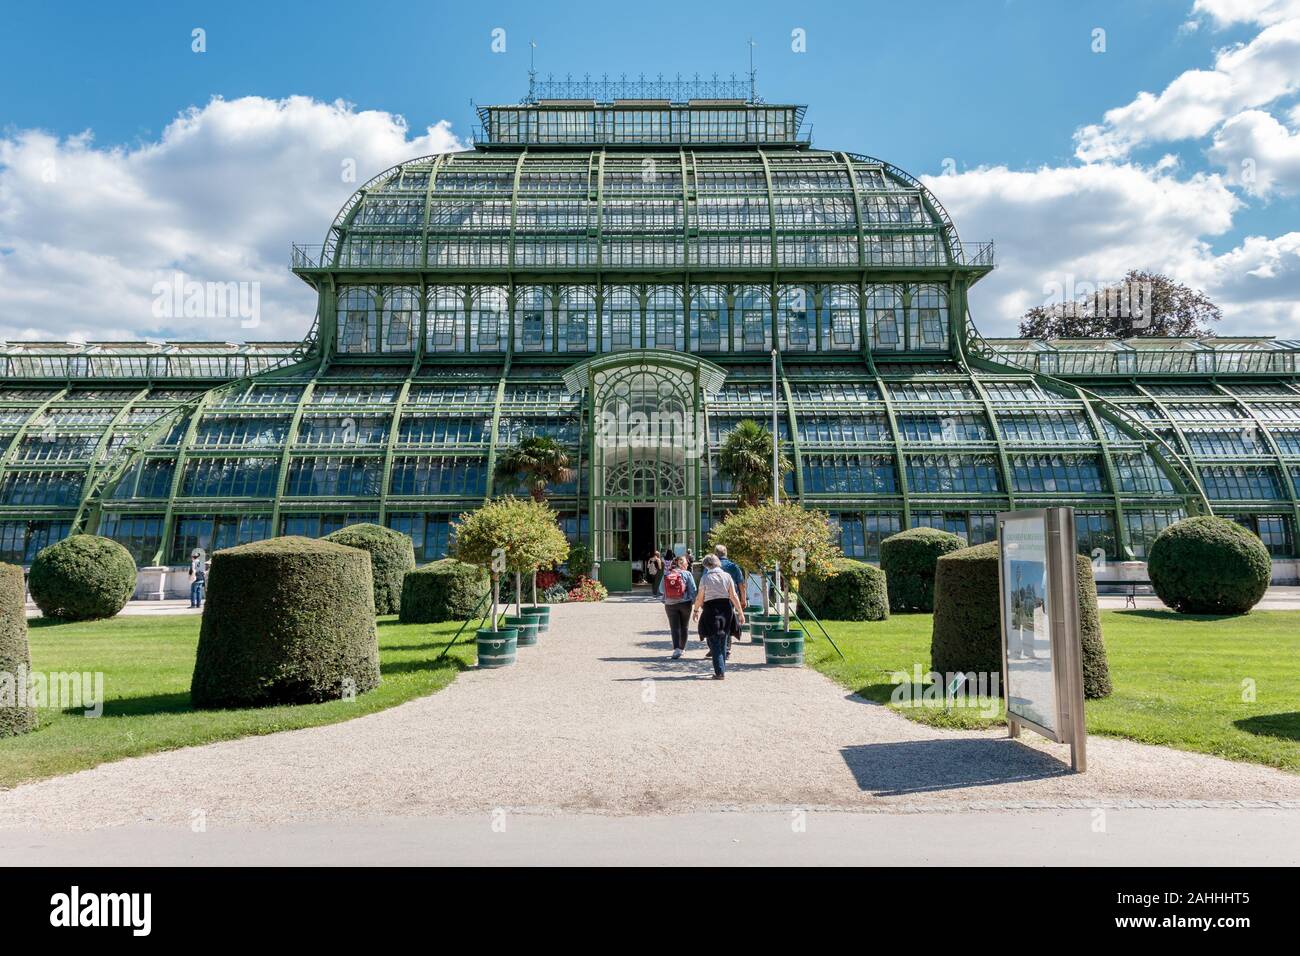 Austria, Vienna - September 3, 2019: Palm House (Palmenhaus) in Vienna Schonbrunn gardens, Austria Stock Photo